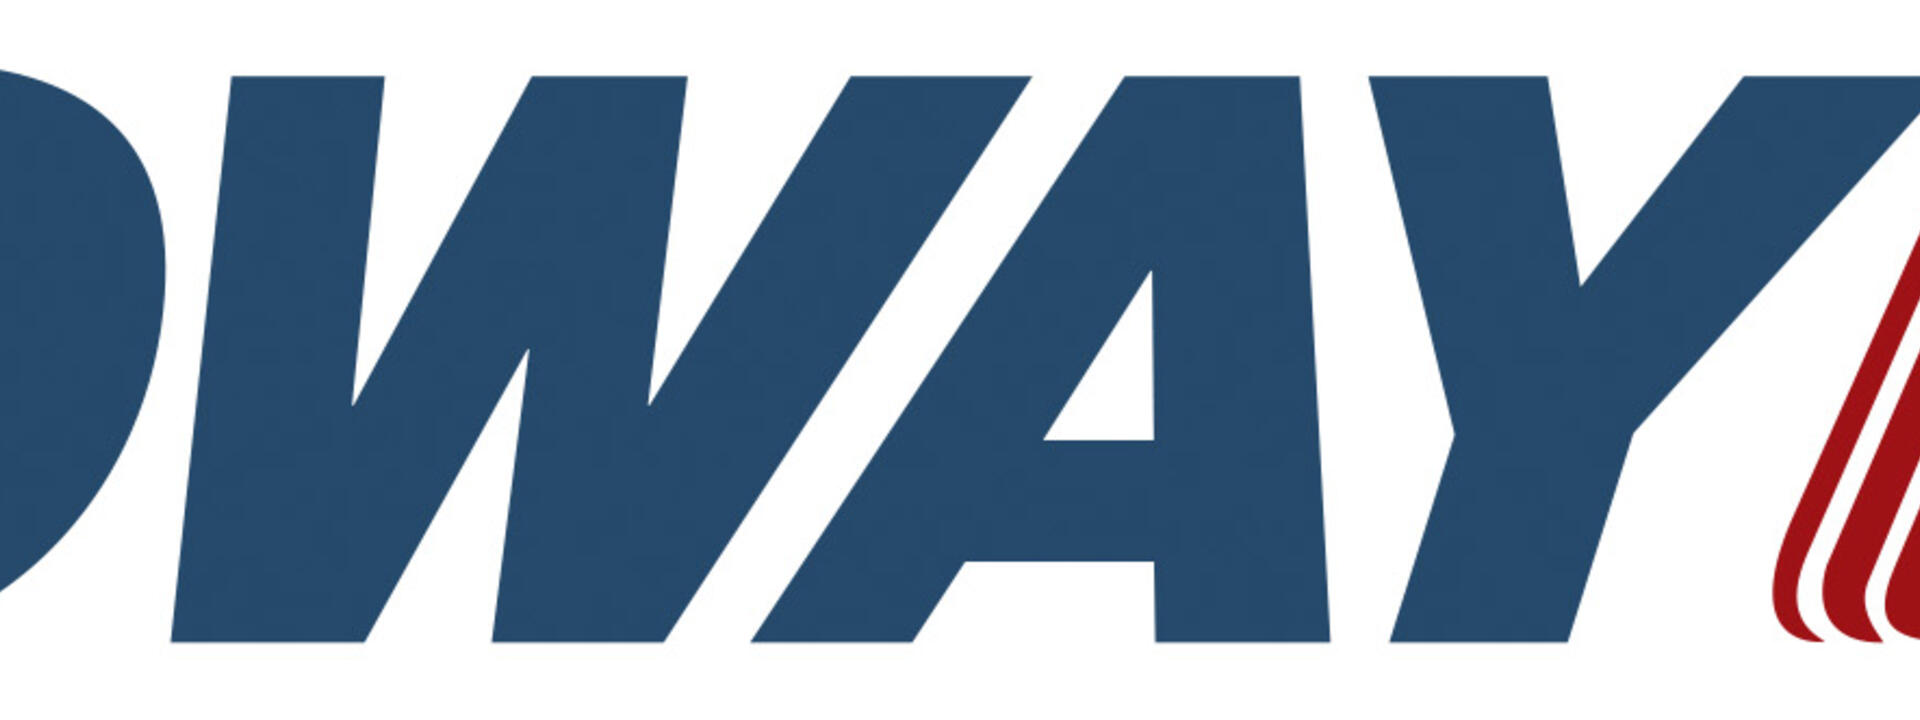 ogway-logo_1.jpg